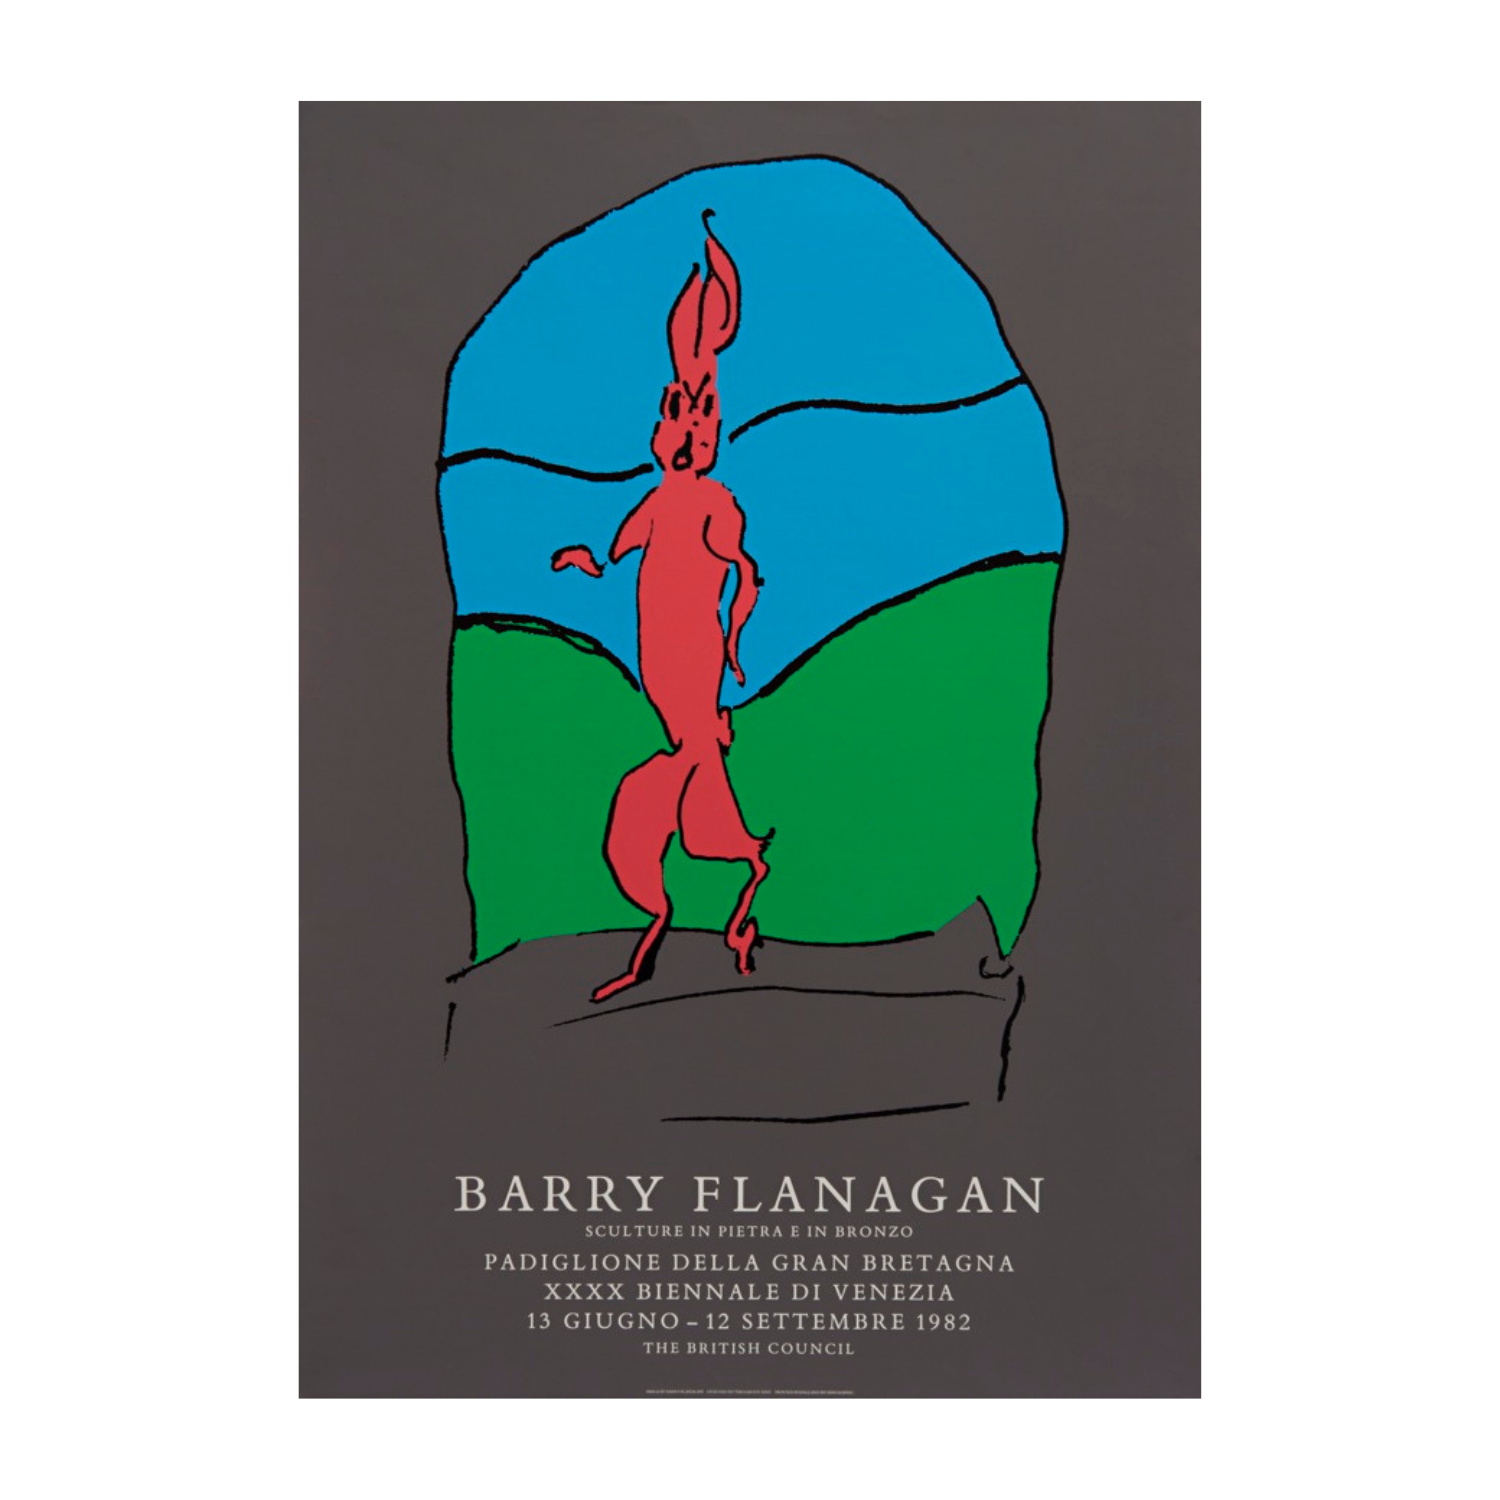 Barry Flanagan’s work